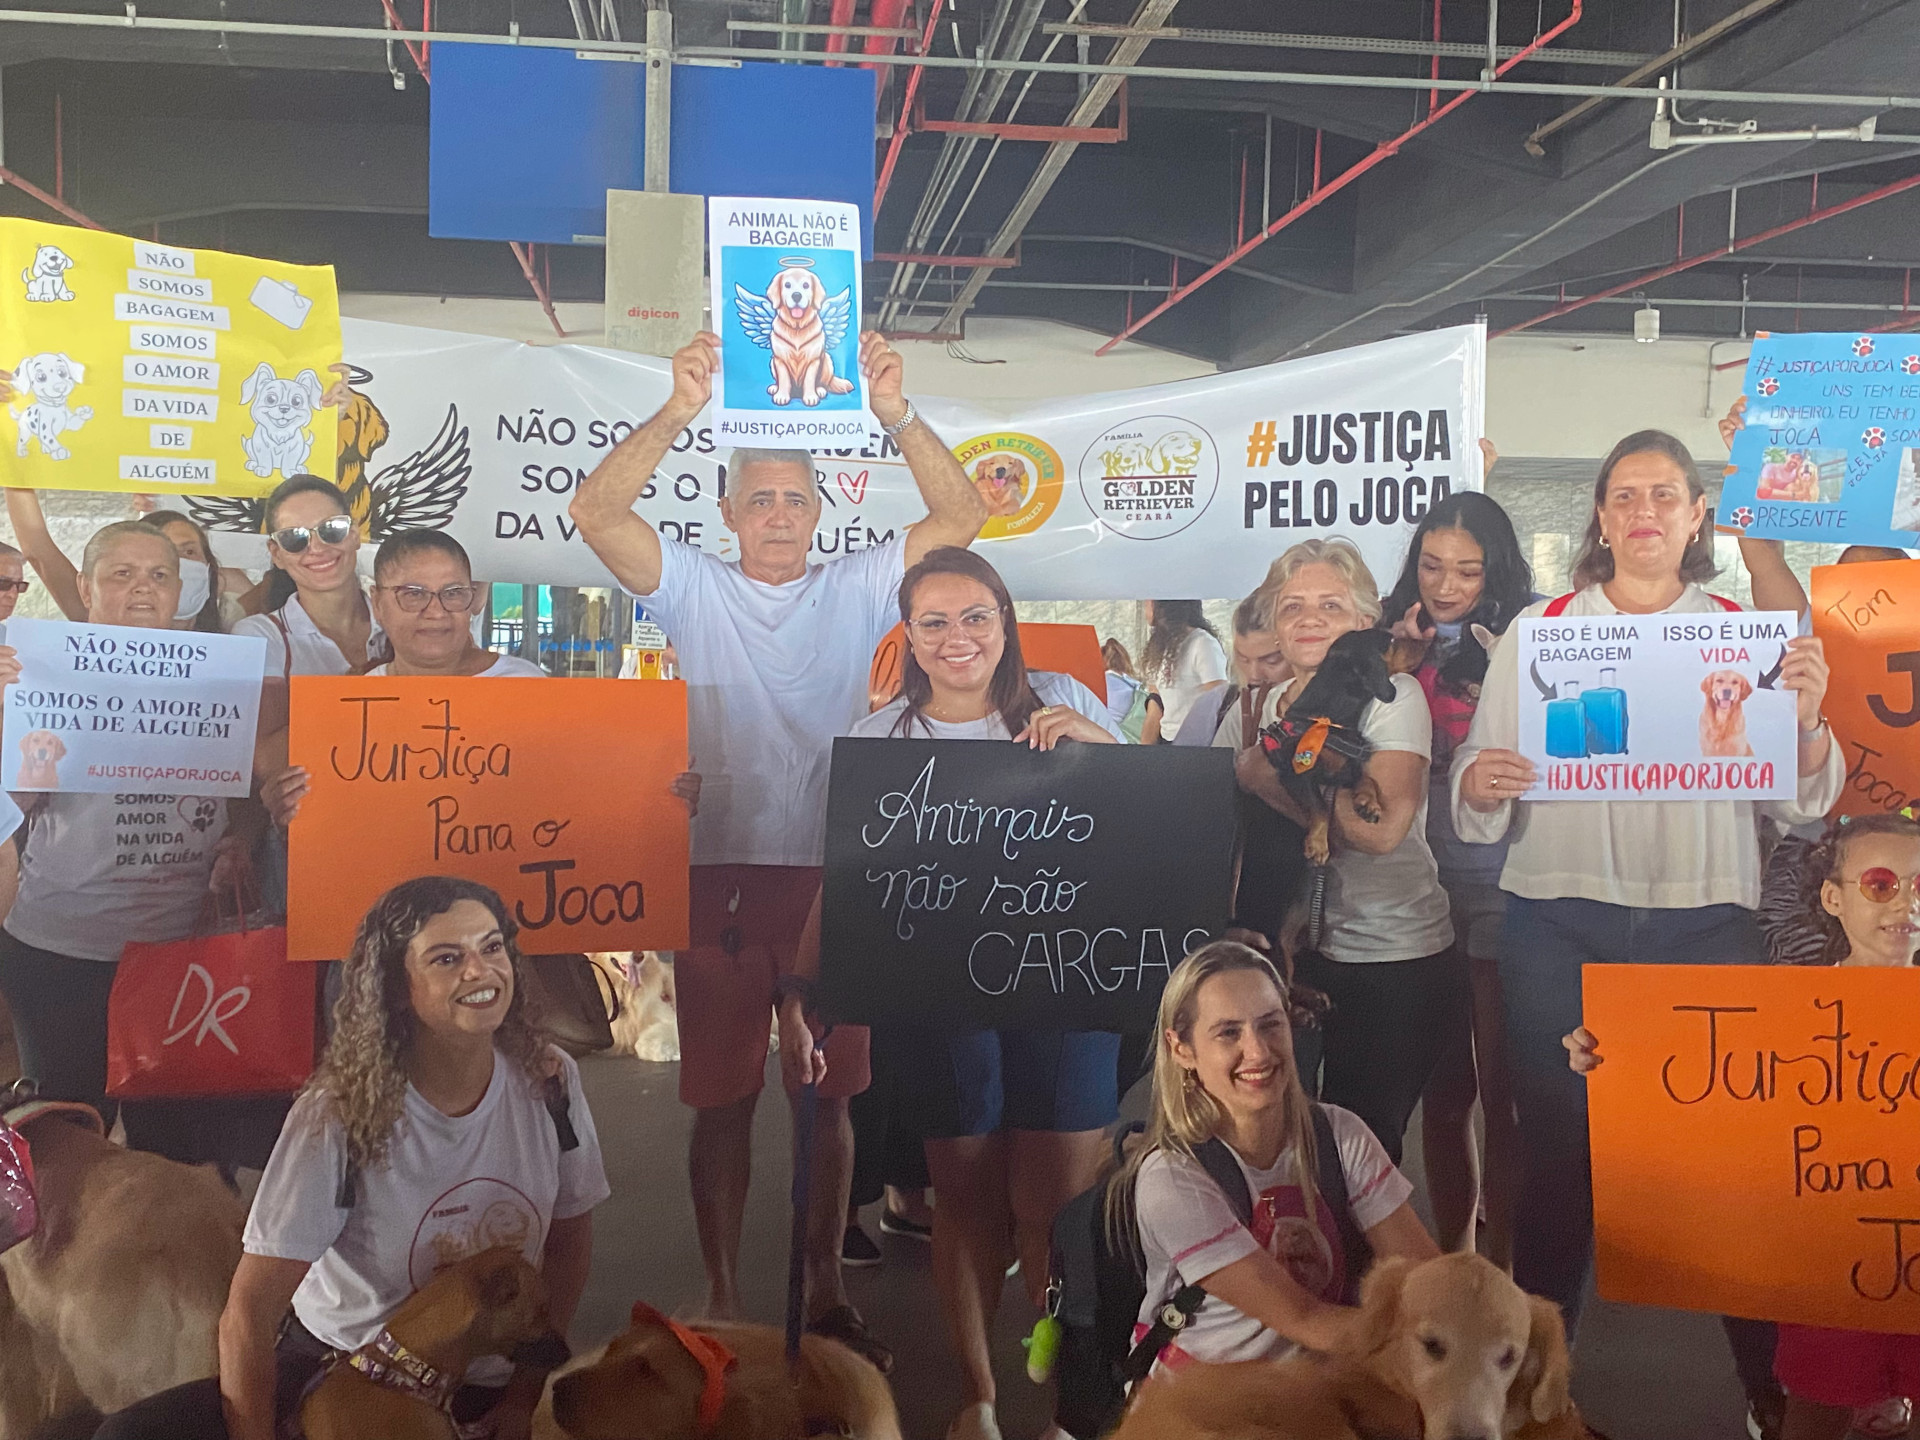 Ativistas e tutores se reuniram em protesto no aeroporto de Fortaleza nesta quarta-feira, 1º de maio (Foto: Penélope Menezes/O POVO)